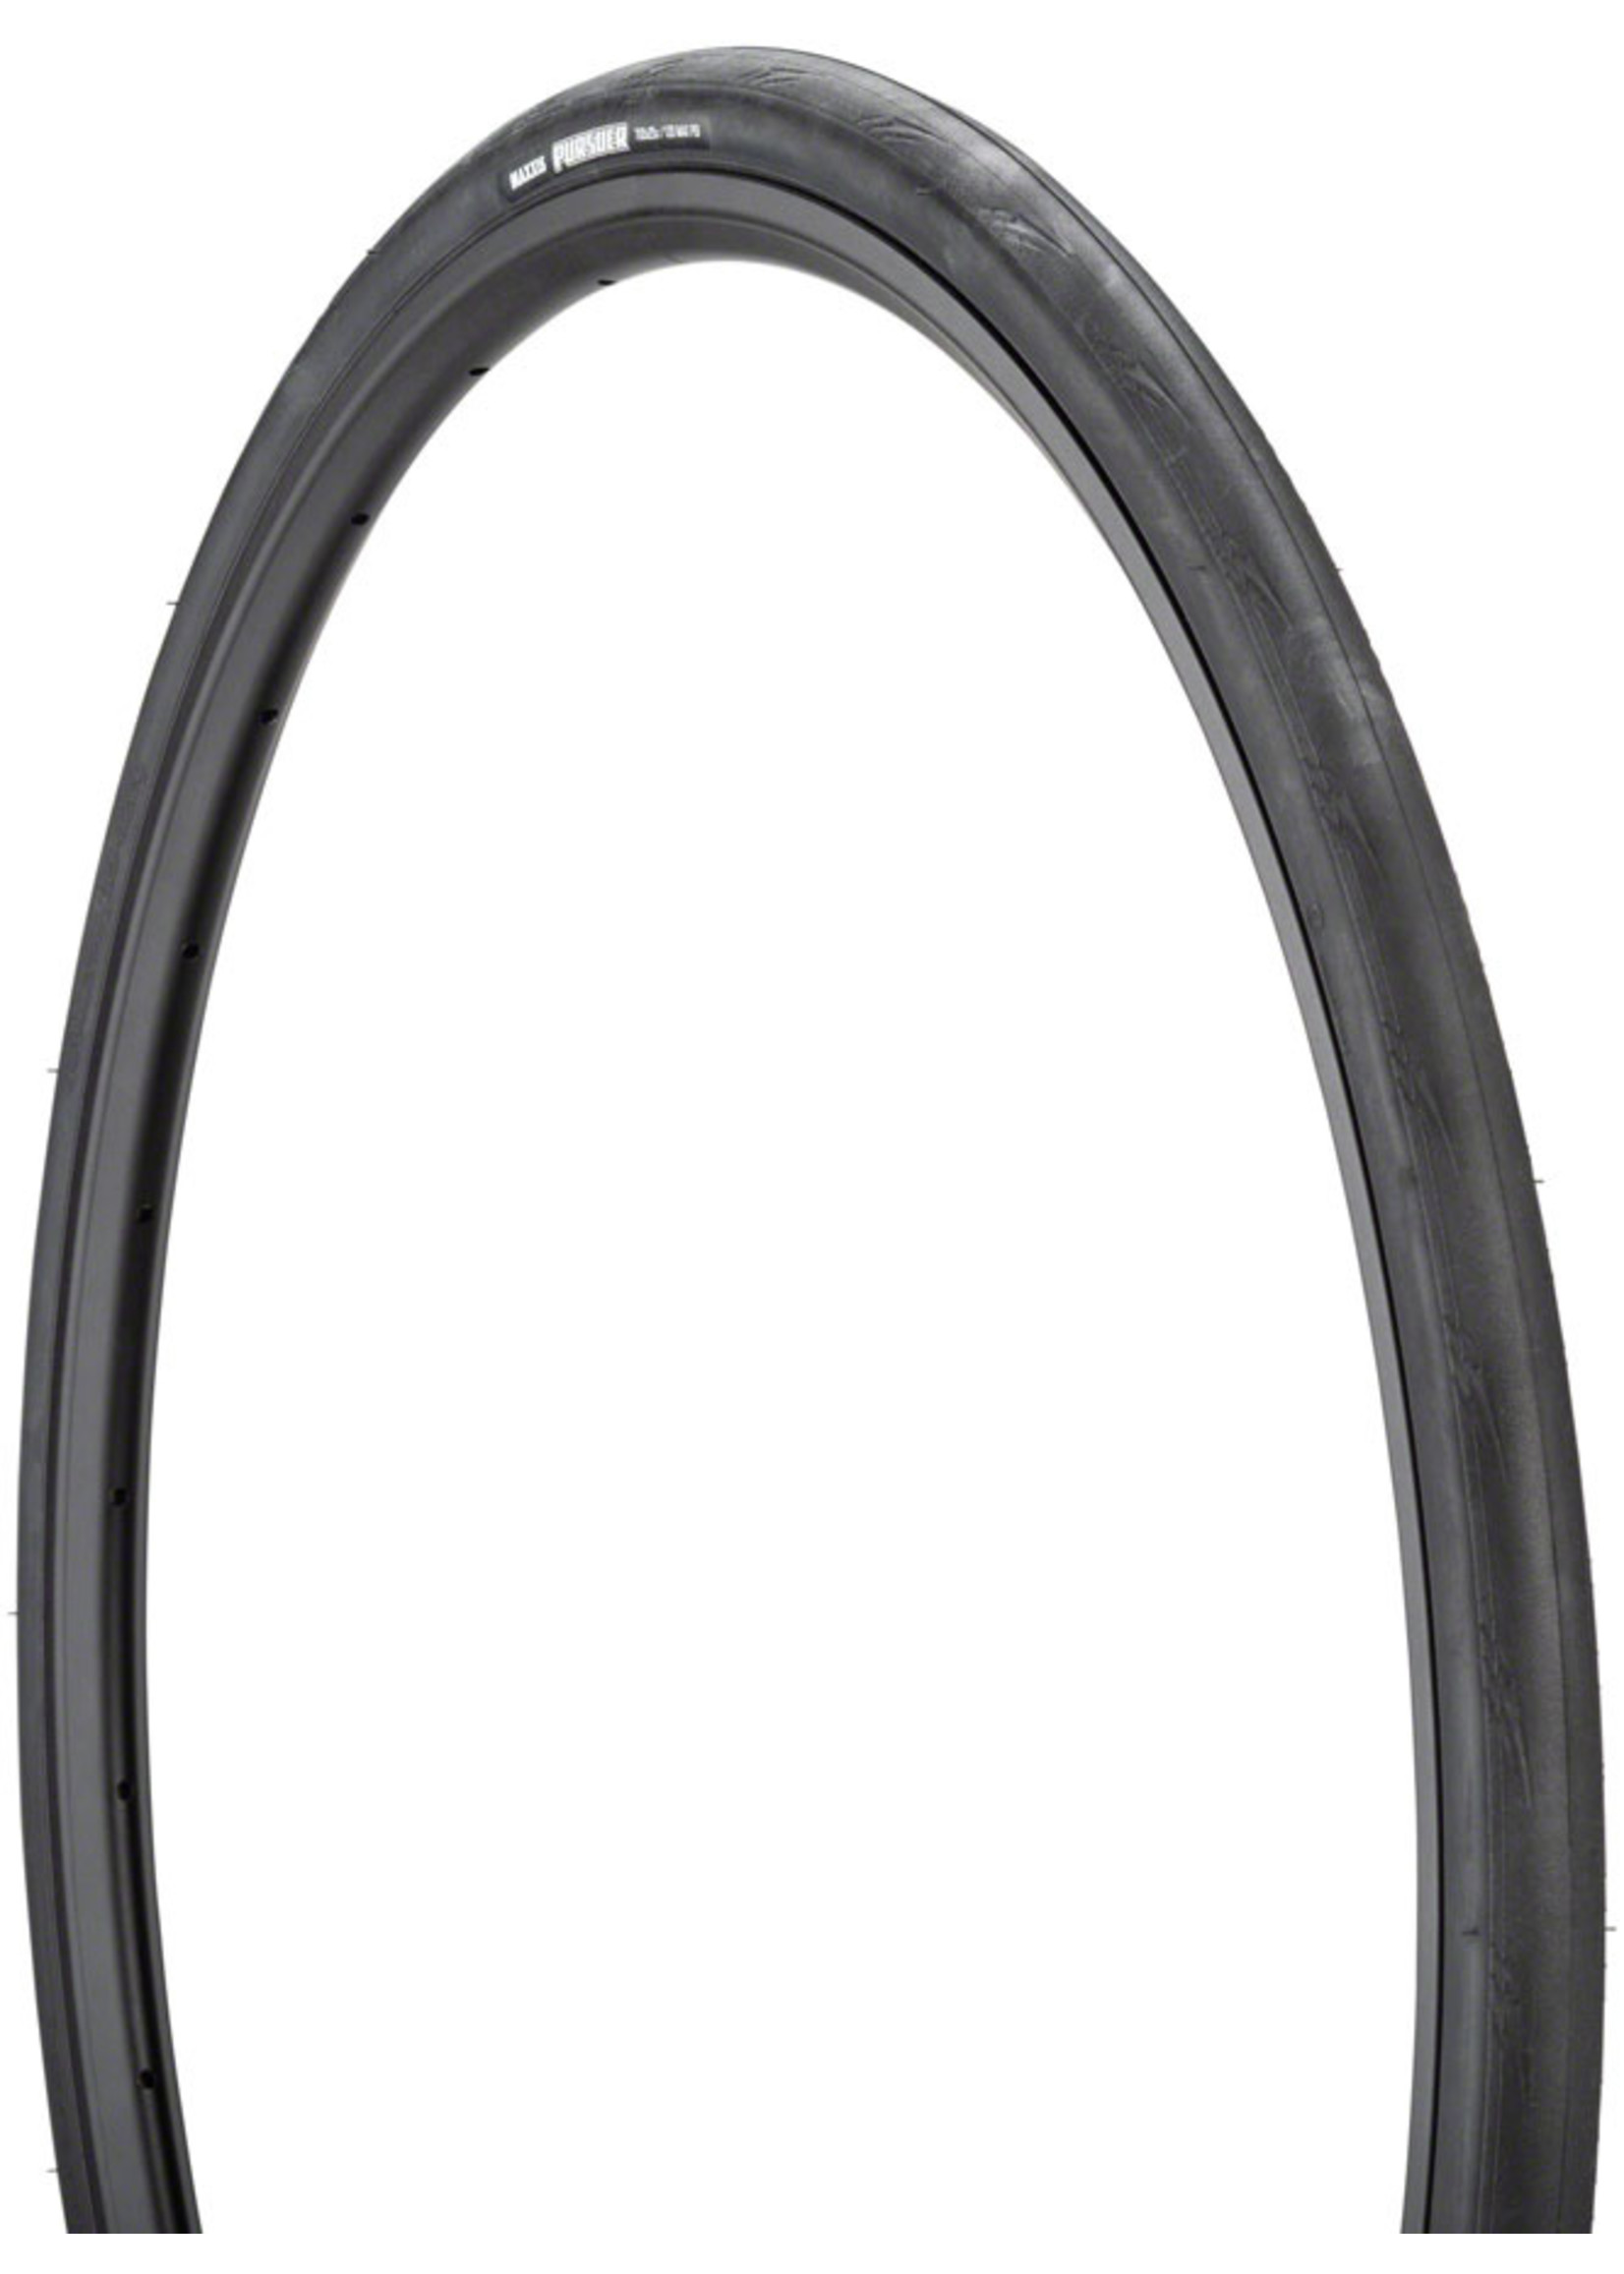 Maxxis Maxxis Pursuer Tire - 700 x 25 Clincher Wire Black